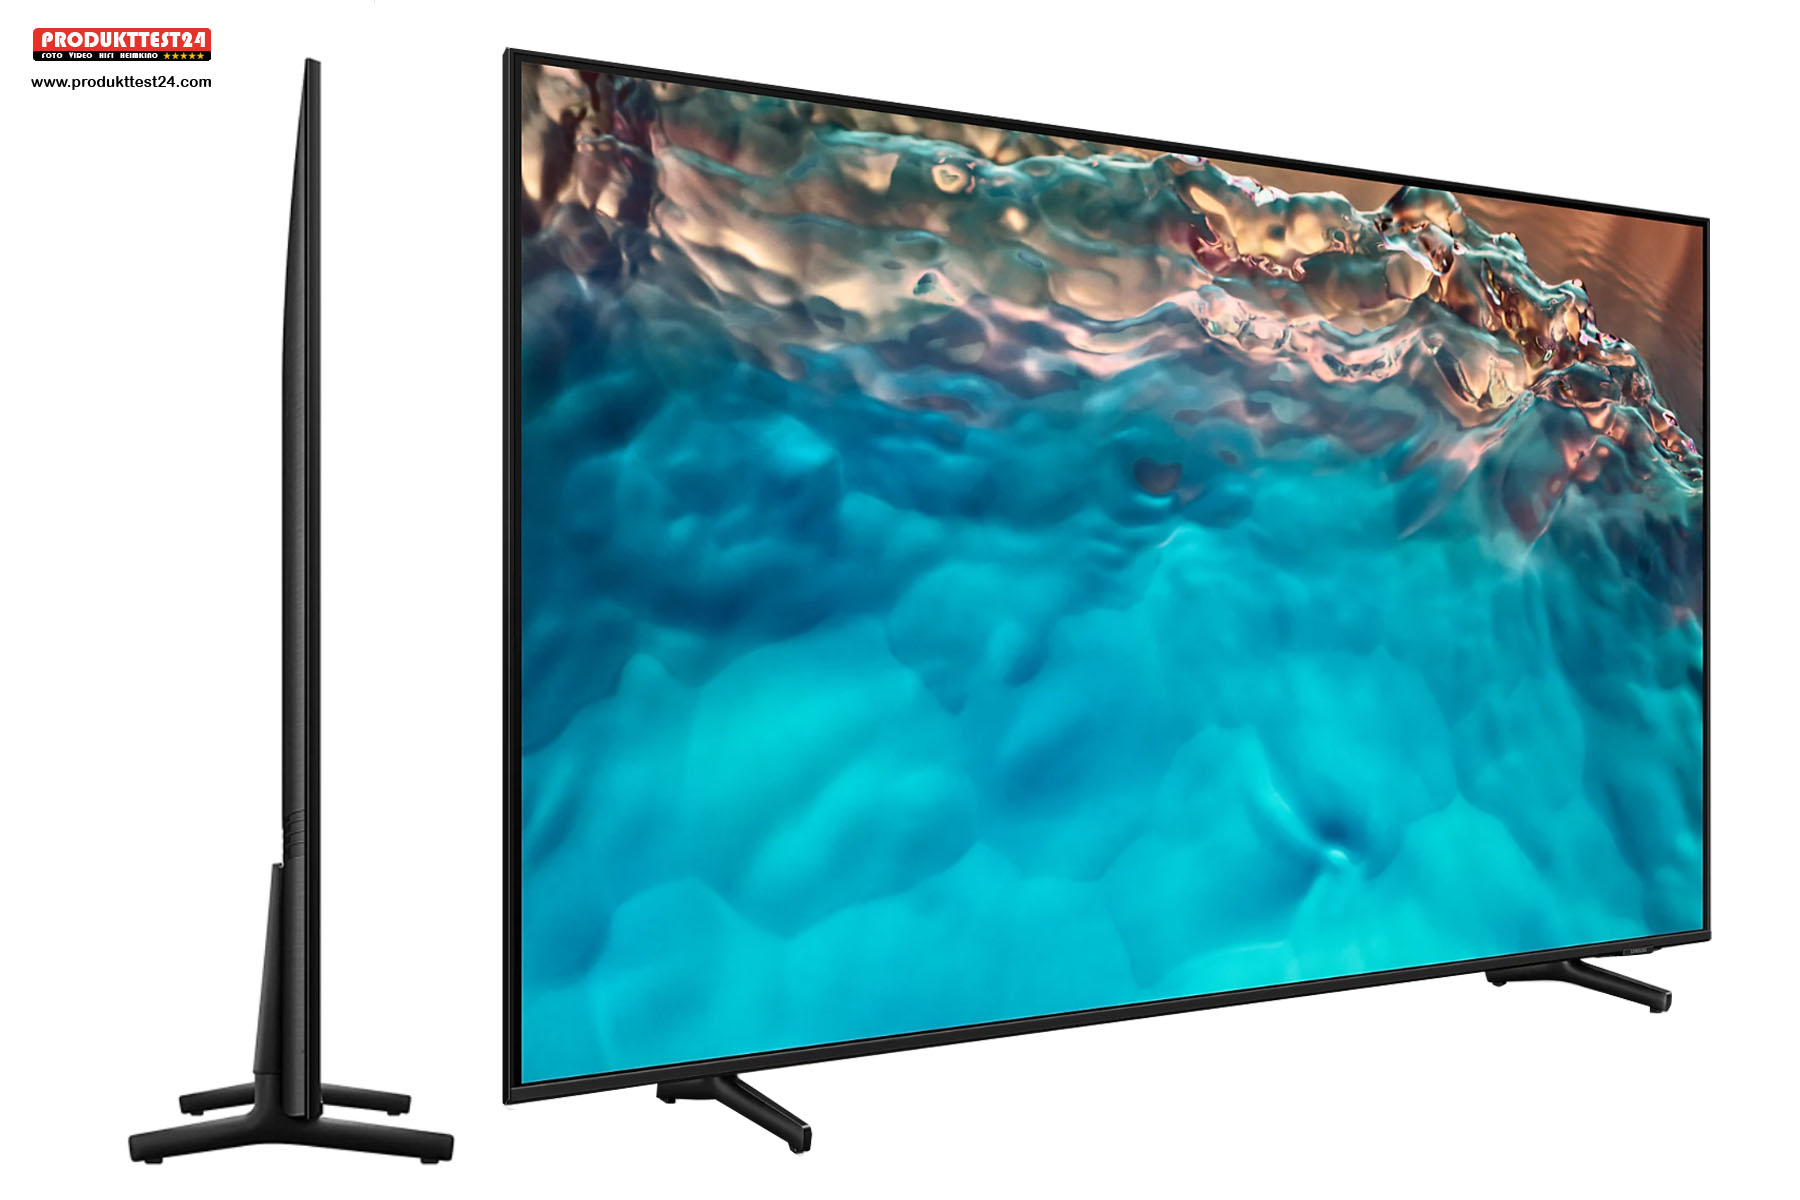 Der riesige 85 Zoll Fernseher misst nur 2,6 cm in der Tiefe.